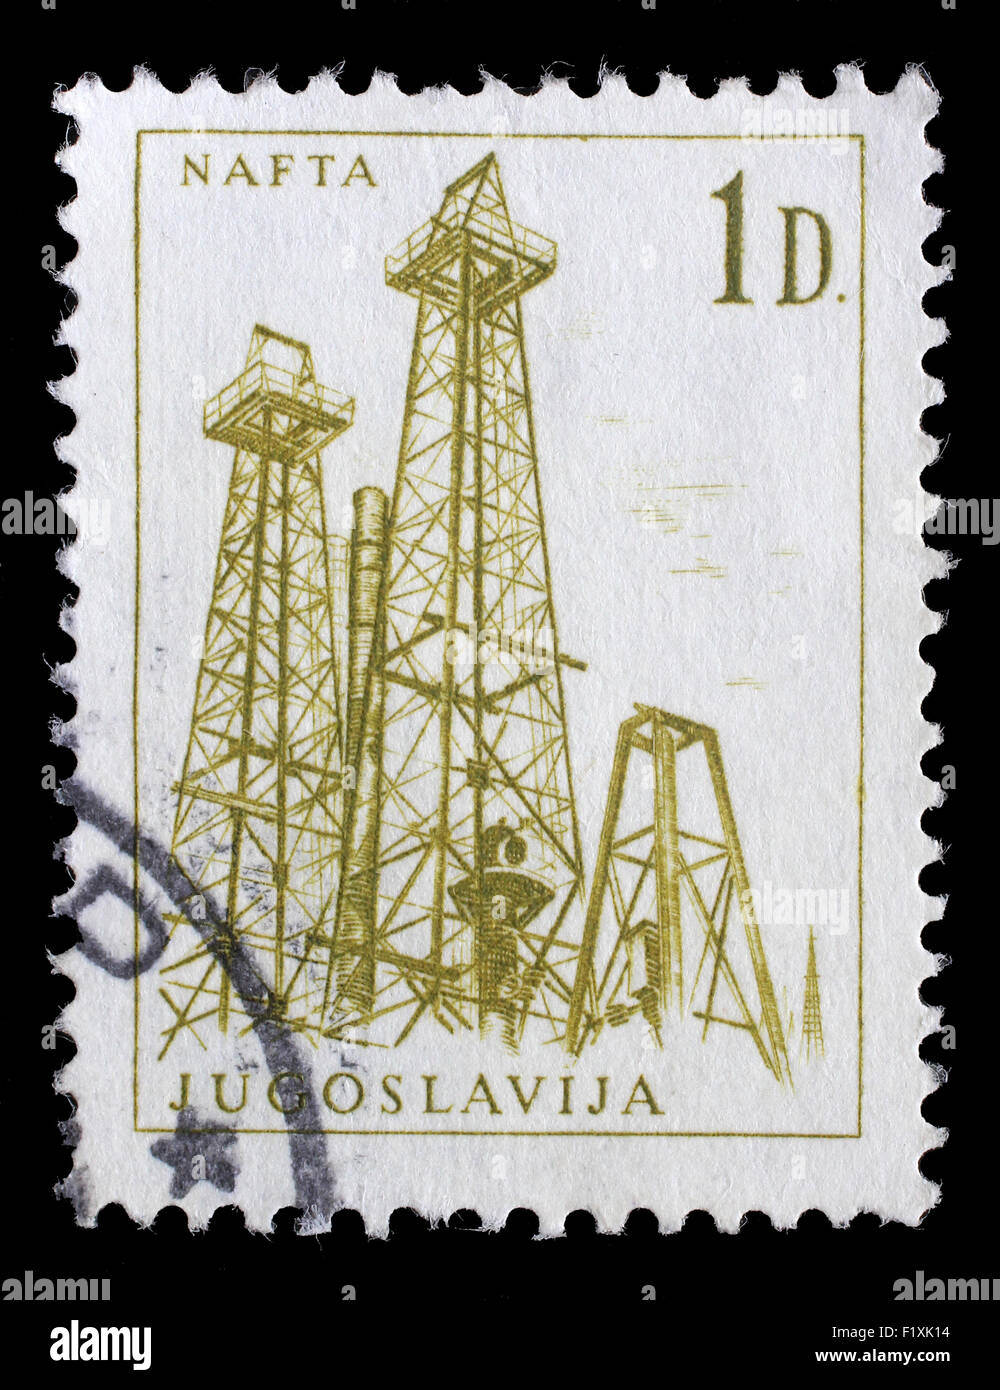 Briefmarke gedruckt in Jugoslawien zeigt eine Öl-Bohrtürme, Nafta, mit der gleichen Inschrift aus Serie industriellen Fortschritt ca. 1966 Stockfoto